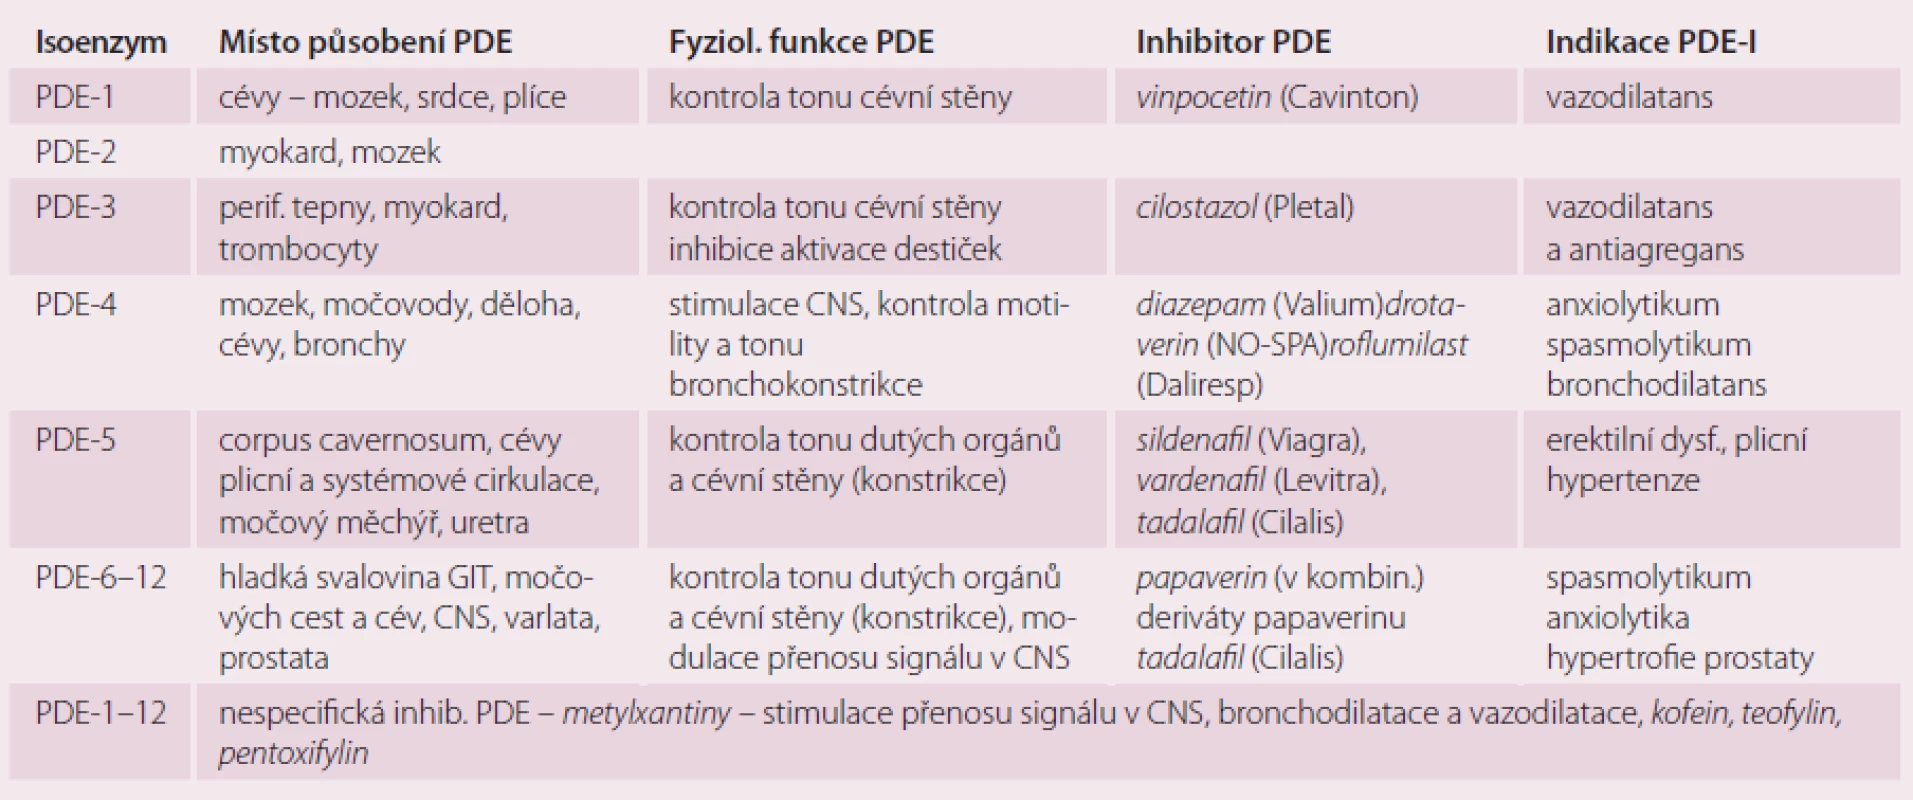 Význam izoenzymů PDE v kontrole fyziologických funkcí, možnosti jejich inhibice.